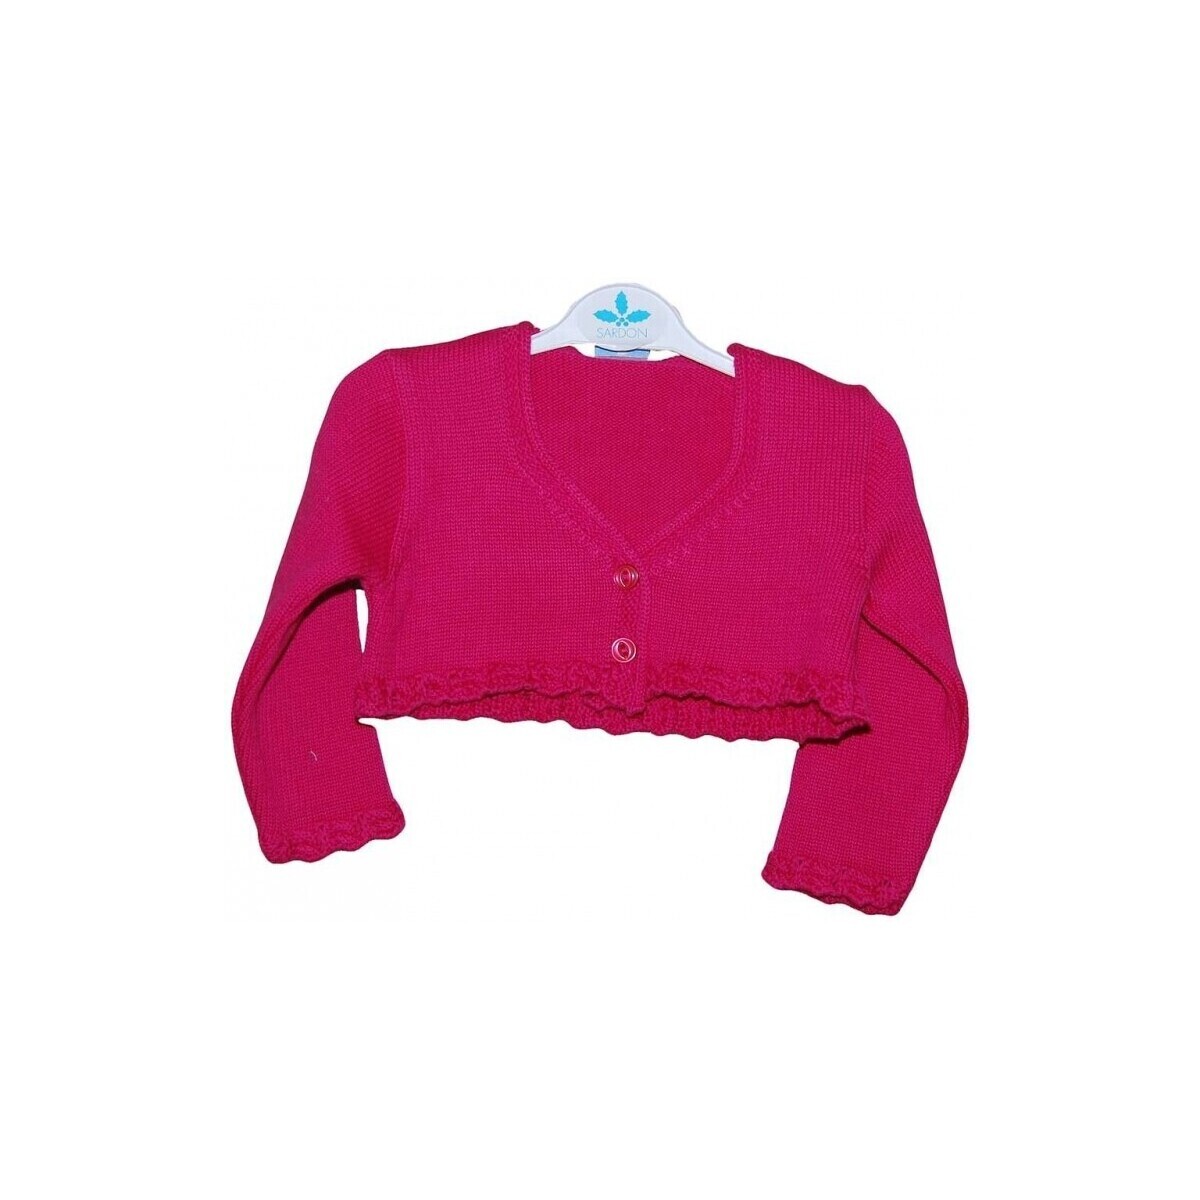 vaatteet Paksu takki Sardon 21429-1 Vaaleanpunainen